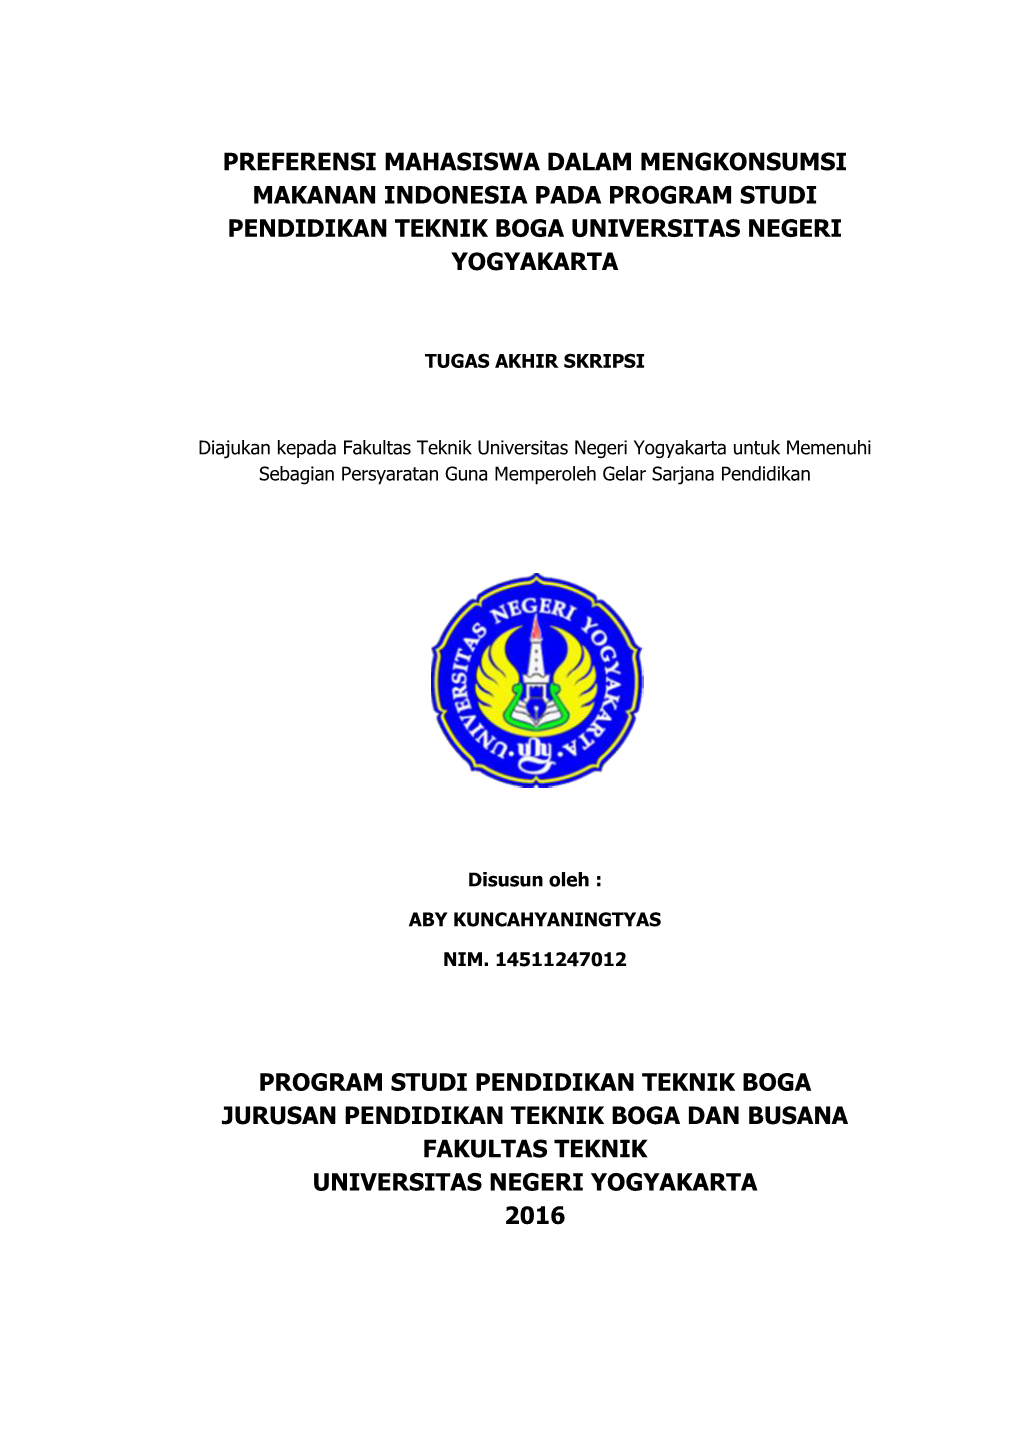 Preferensi Mahasiswa Dalam Mengkonsumsi Makanan Indonesia Pada Program Studi Pendidikan Teknik Boga Universitas Negeri Yogyakarta